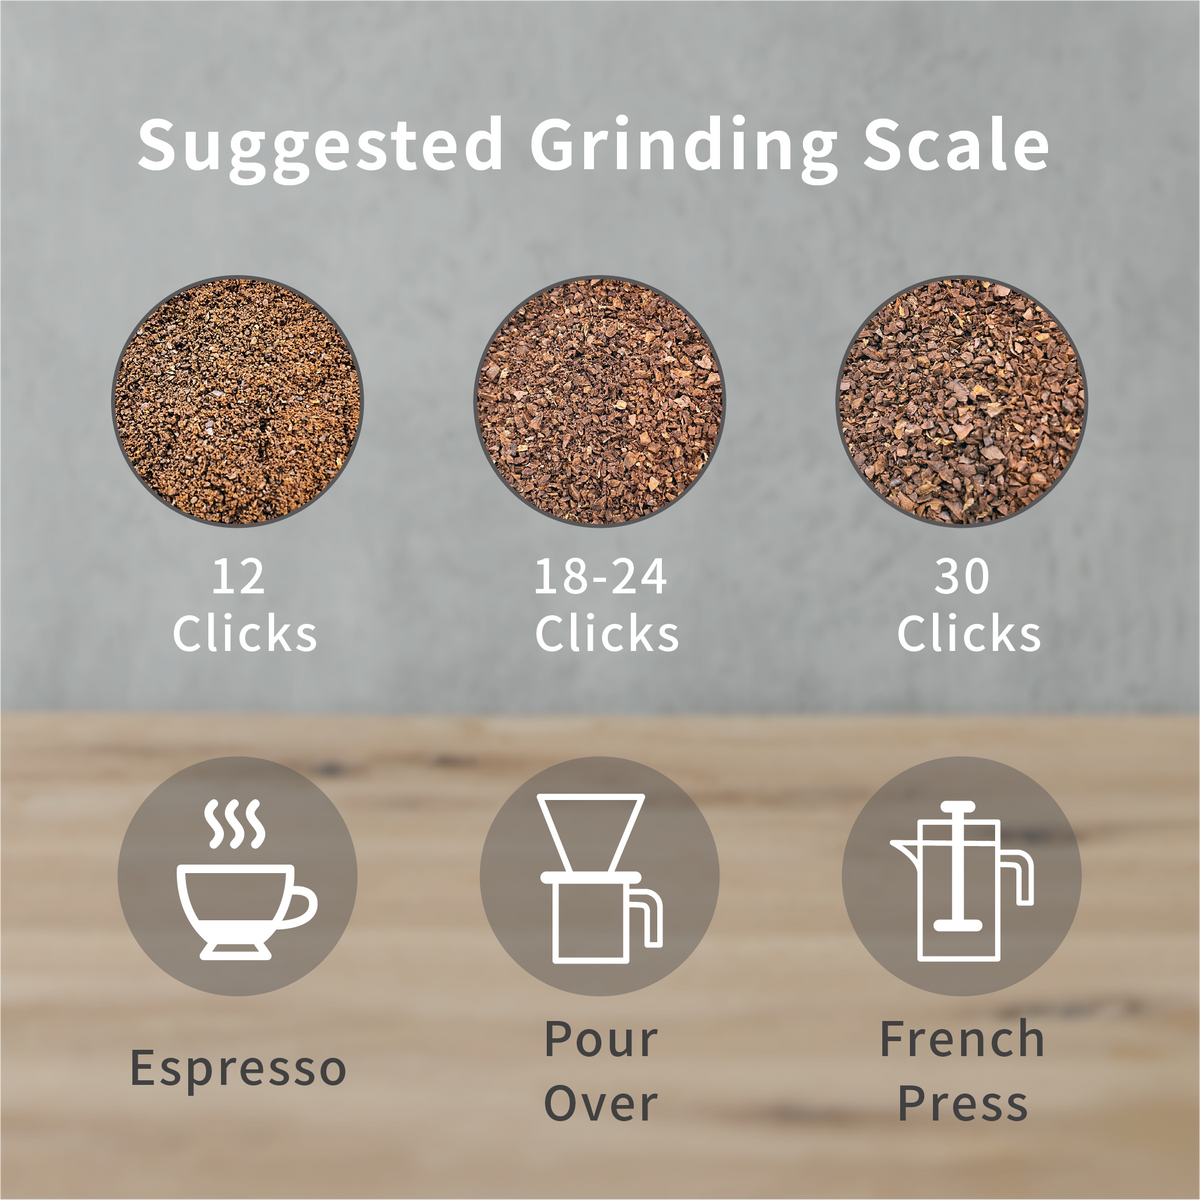 Sandbox Smart G1 Coffee Bean Grinder